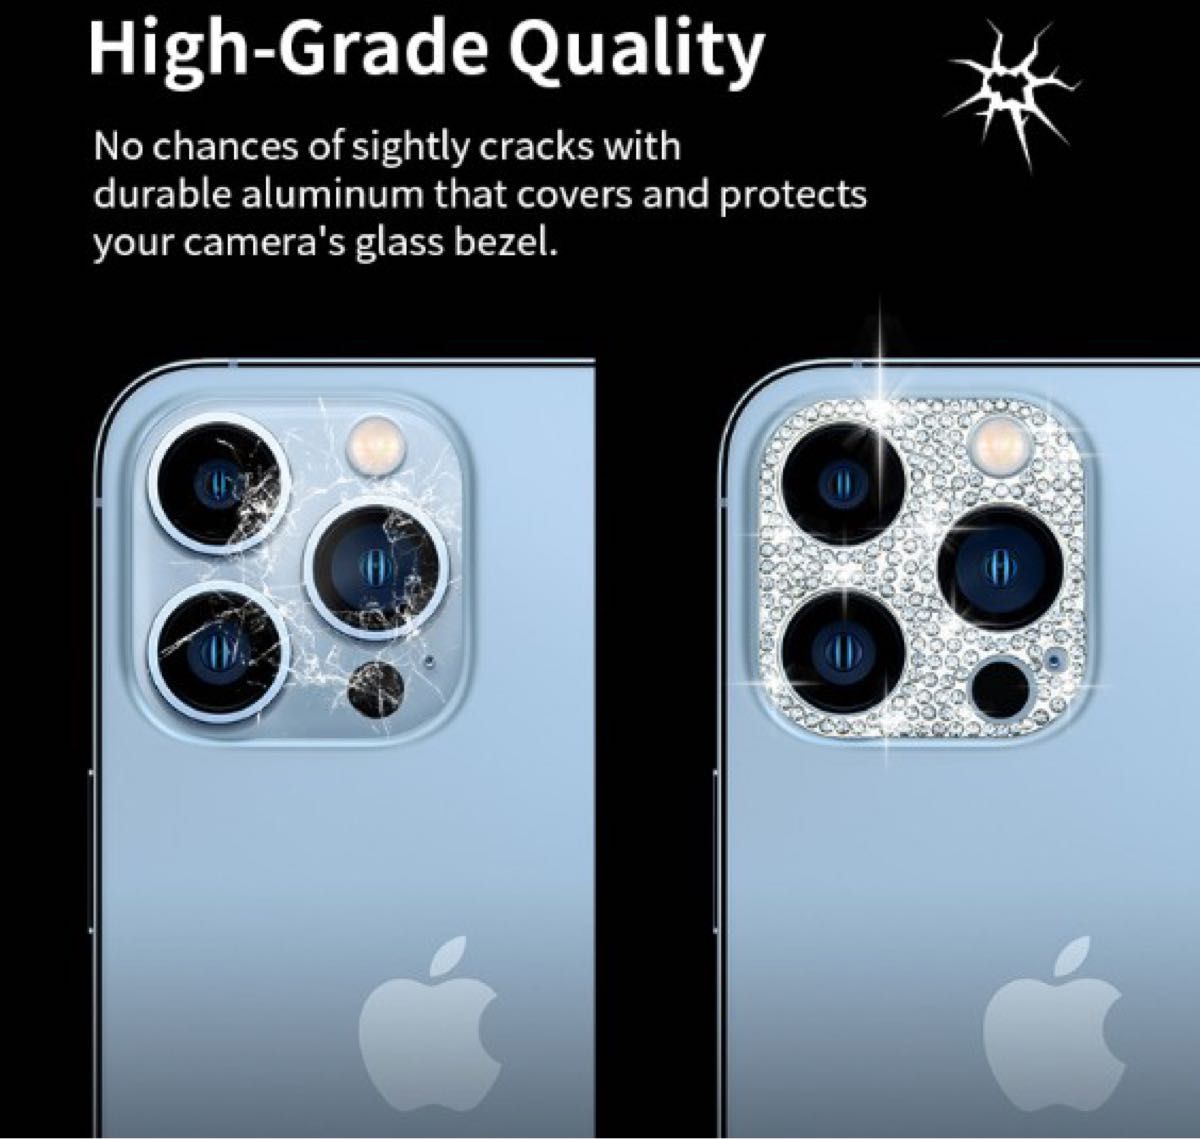 iPhone15Pro/ProMAX カメラ保護 レンズカバー　ローズゴールド